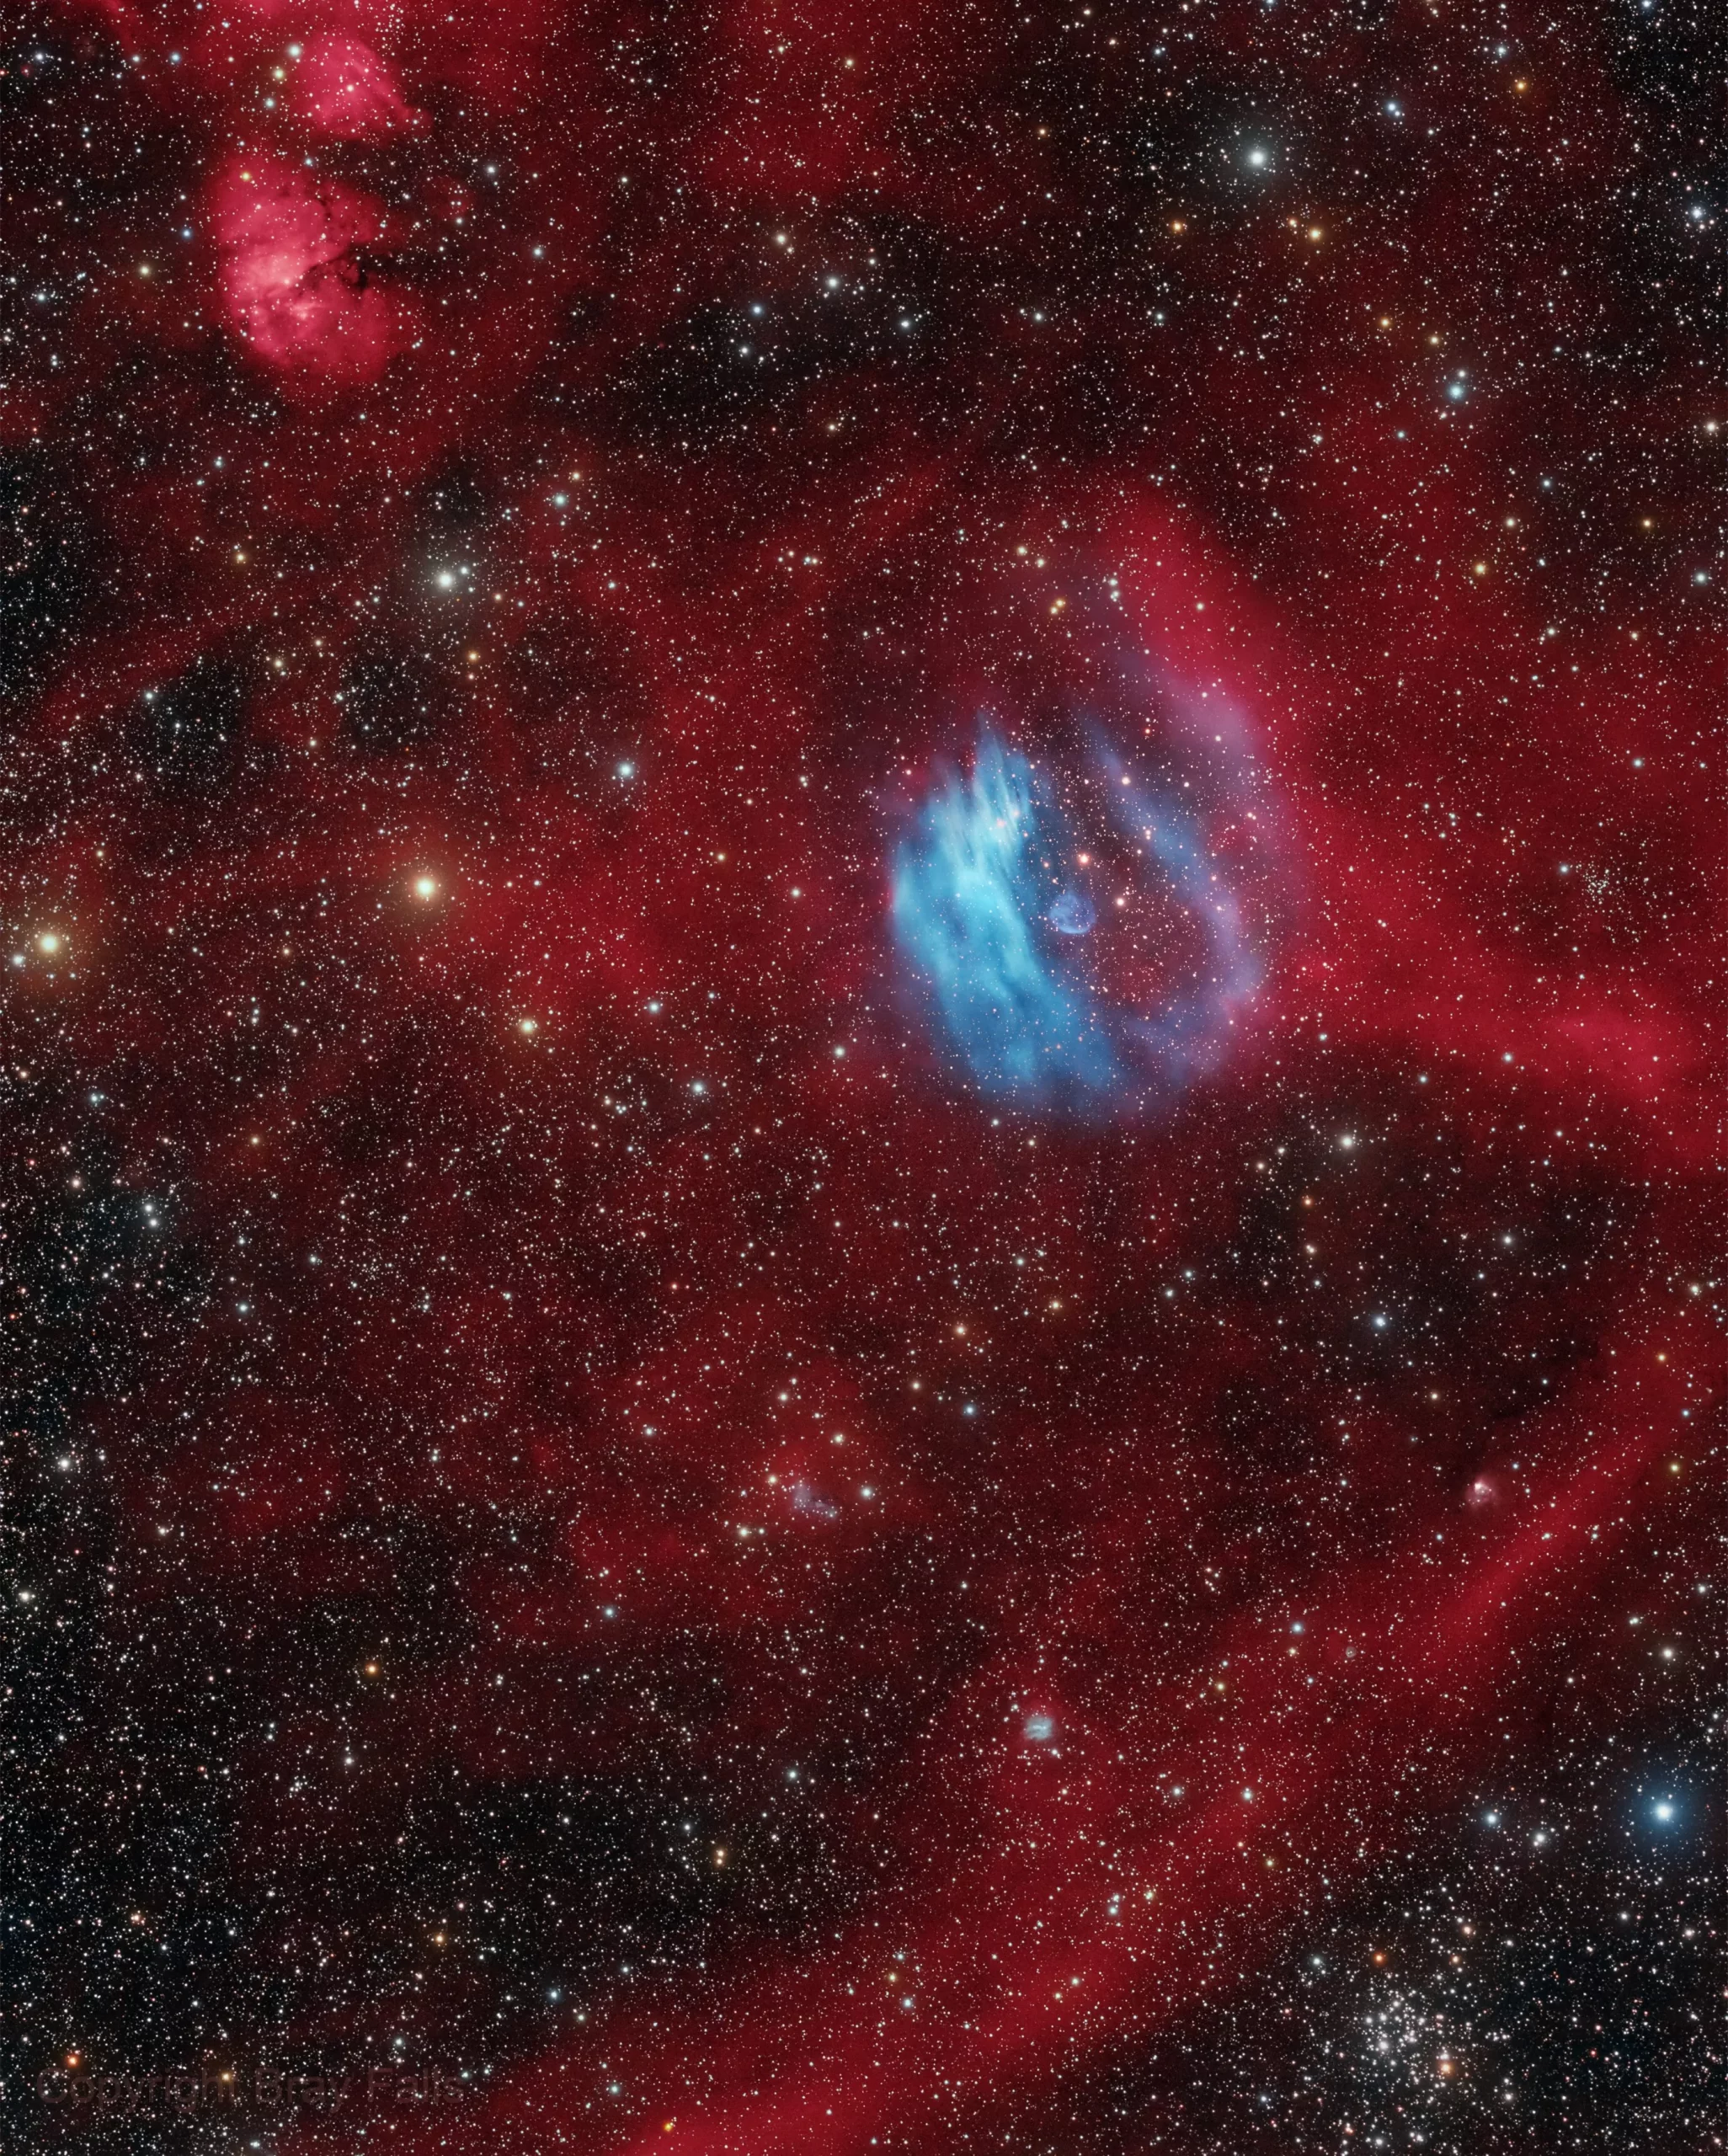 天文摄影师Bray Falls将其发现的第一个星云命名为凯伯水晶星云，就在麒麟座M50疏散星团（画面右下角）的近旁。来源：astrobin